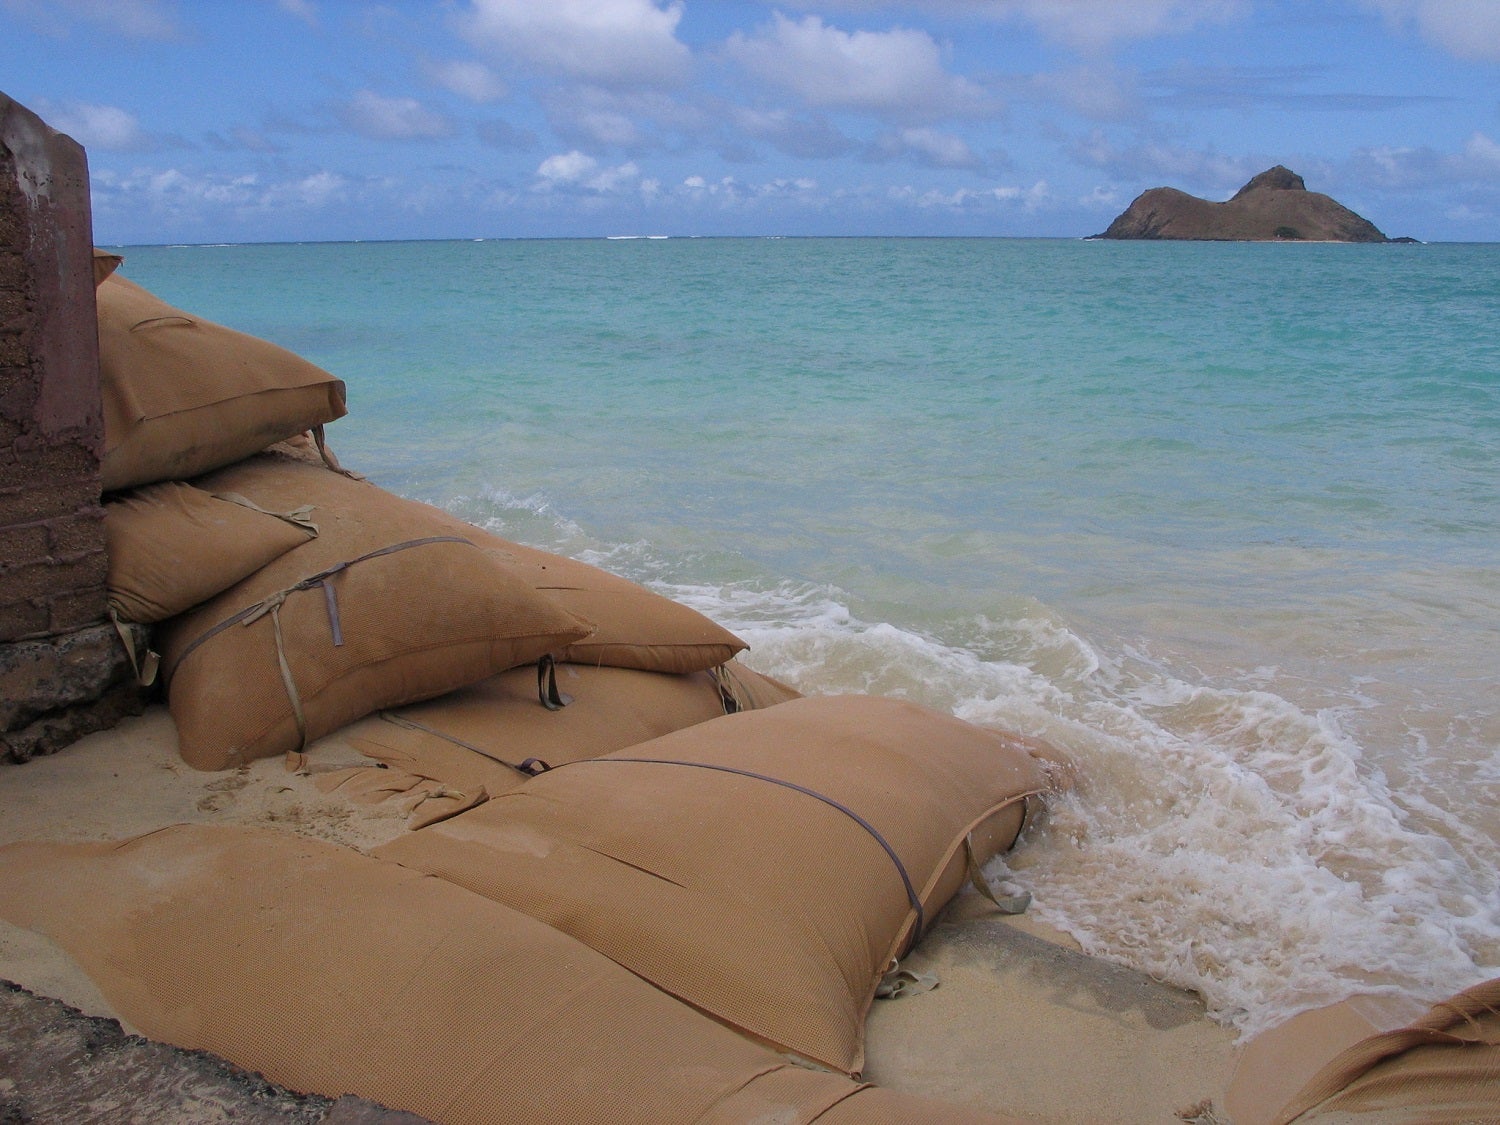 Sandbags on Lanikai Beach on Oahu, Hawaii to prevent coastal erosion